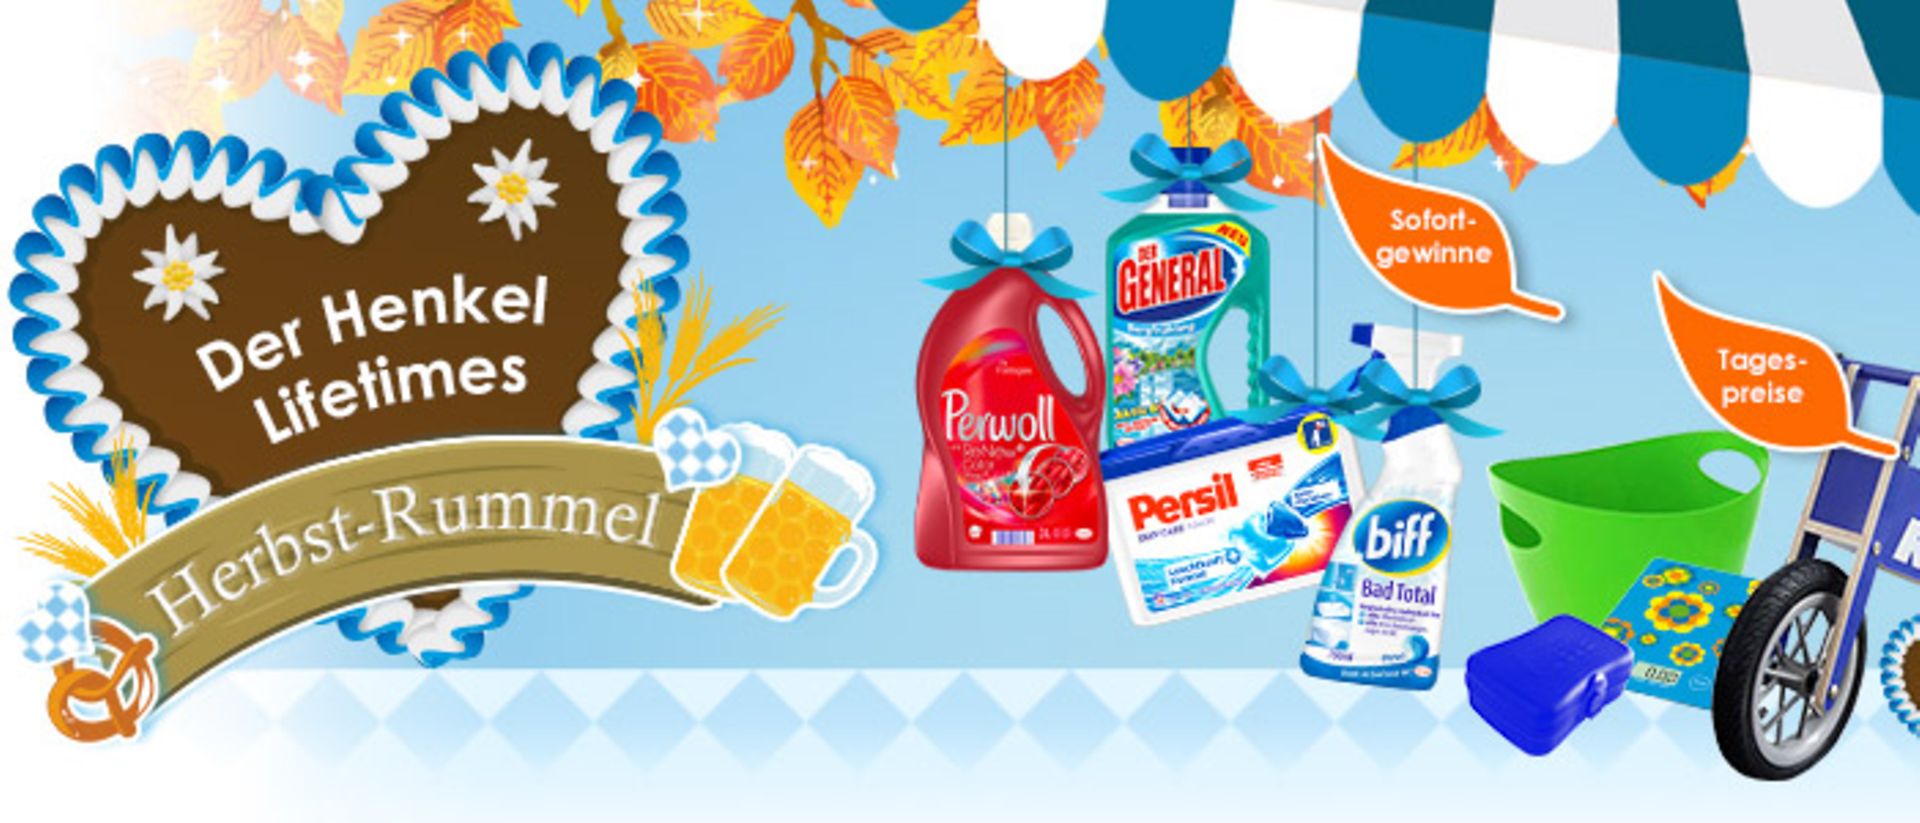 
Sichern Sie sich geballte Gewinnchancen auf dem Henkel Lifetimes Herbst-Rummel – darunter insgesamt über 800 Sofortgewinne mit Markenprodukten von Persil, Somat, Perwoll & Co. sowie über 170 Tagespreise. Als Hauptpreis winken drei Städtetrips für 2 Personen.